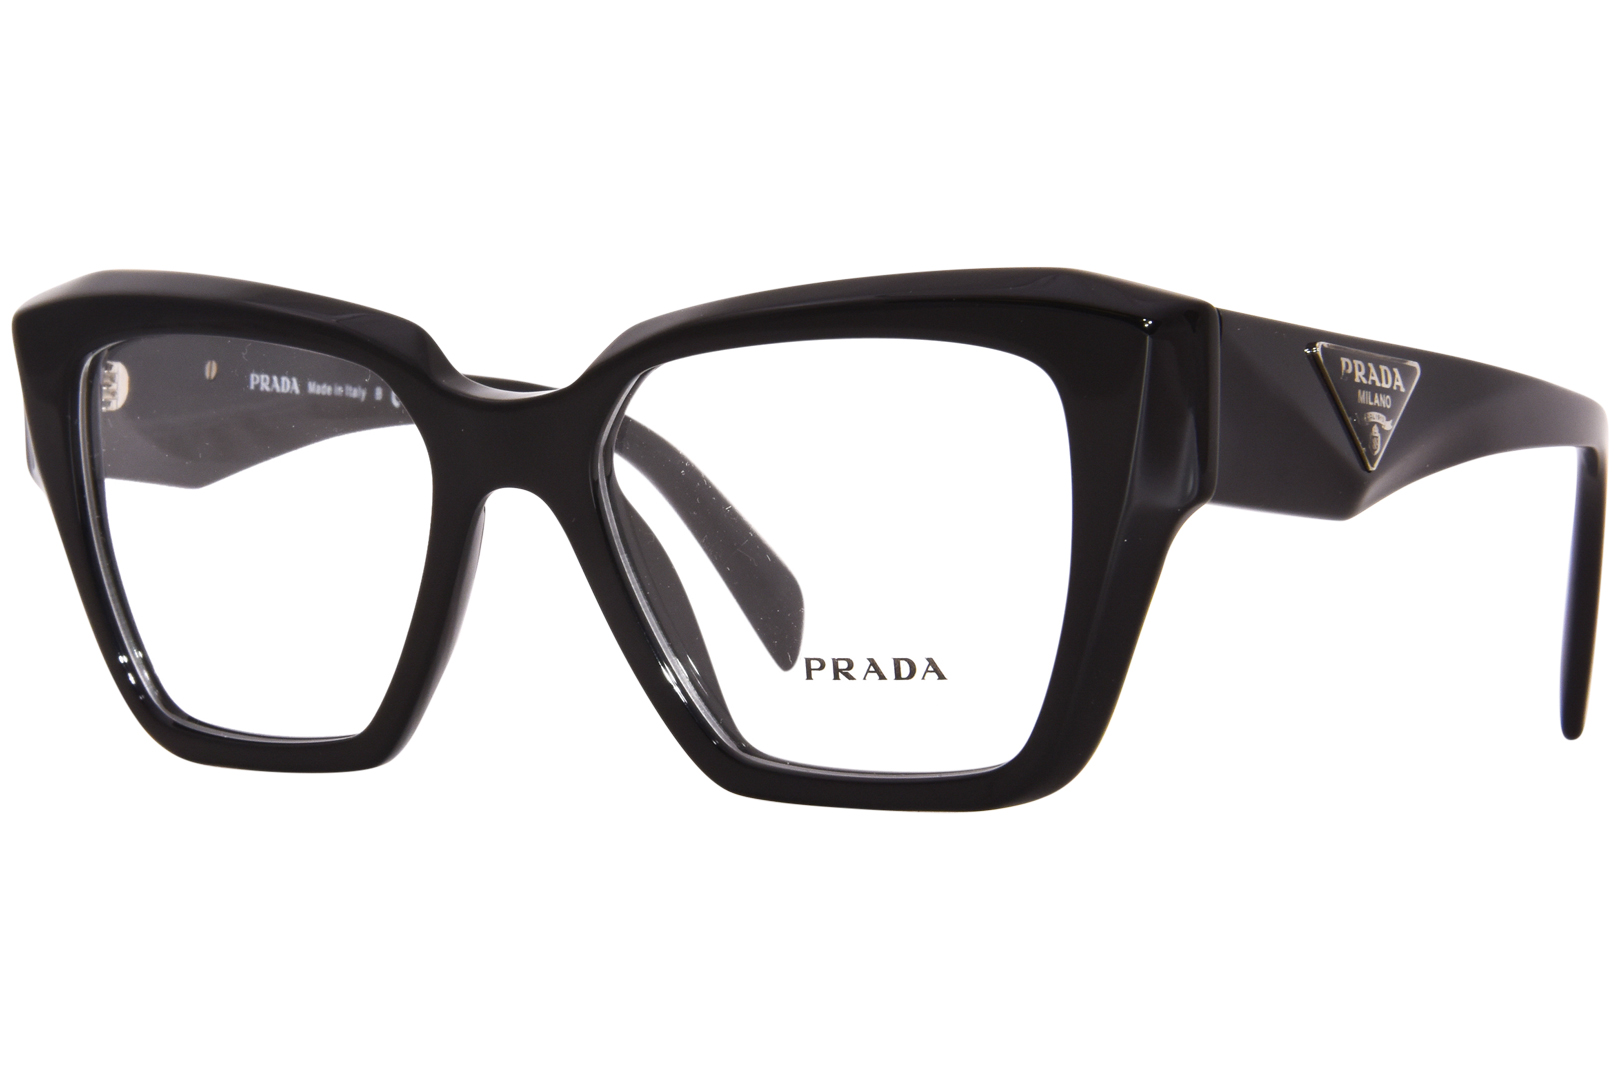 Prada PR 09ZV Eyeglasses Women's Full Rim Square Shape | JoyLot.com